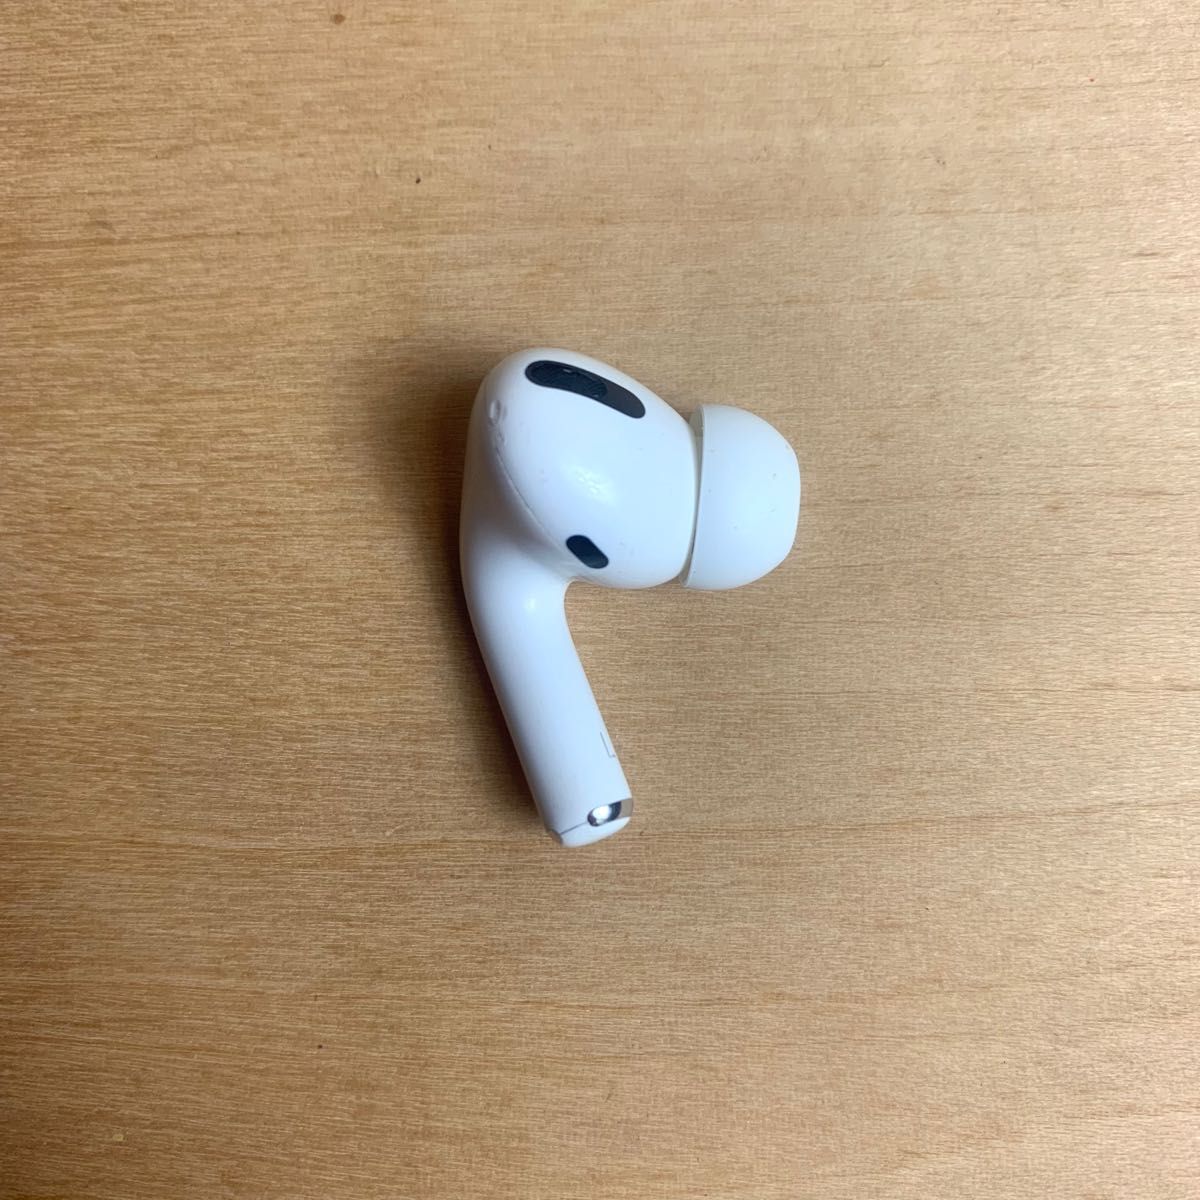 エアーポッズプロ AirPods Pro 左耳のみ Apple純正品 国内正規品 